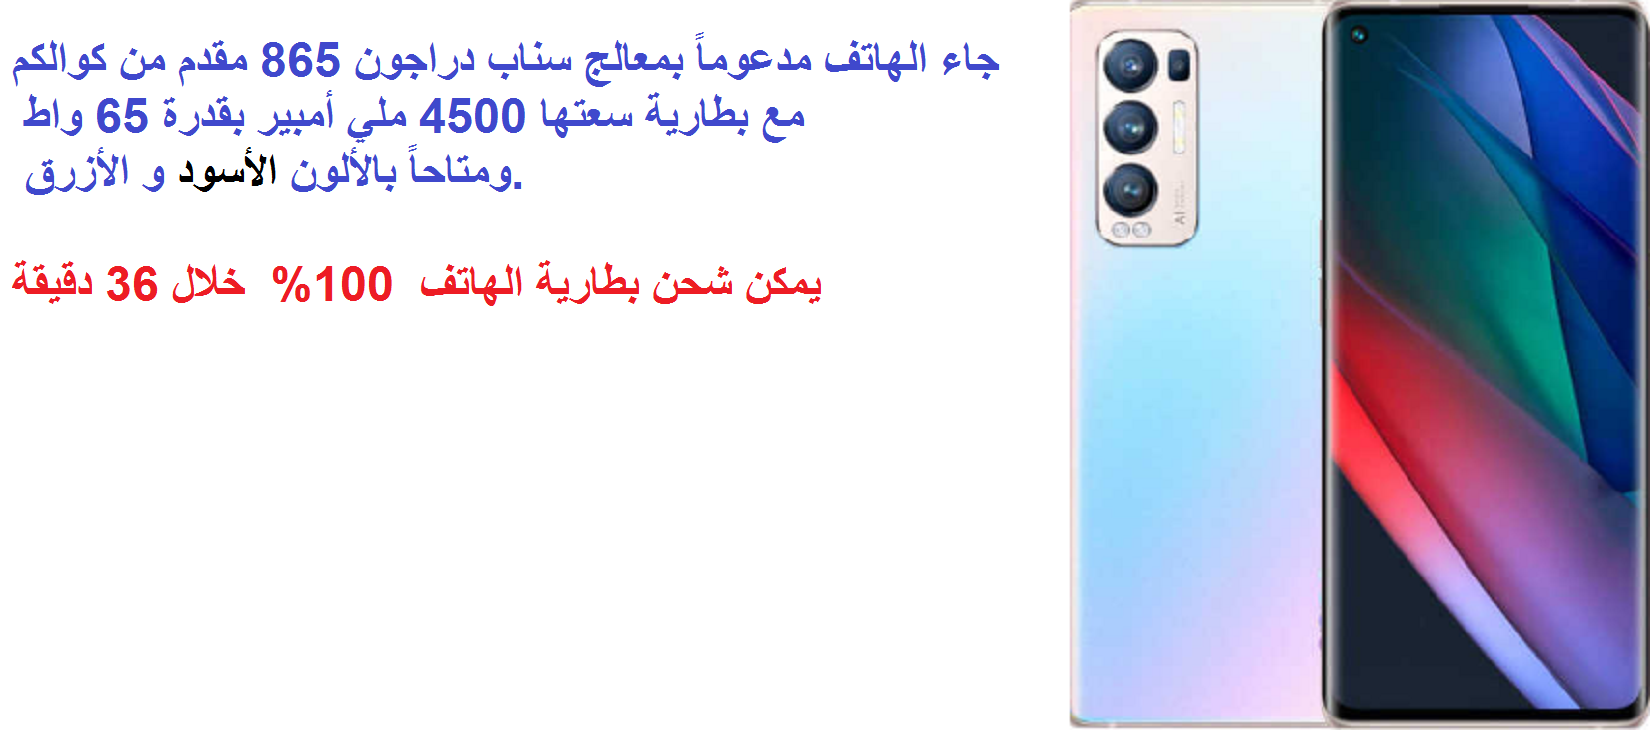 سعر هاتف Oppo Find X4 Neo في مصر